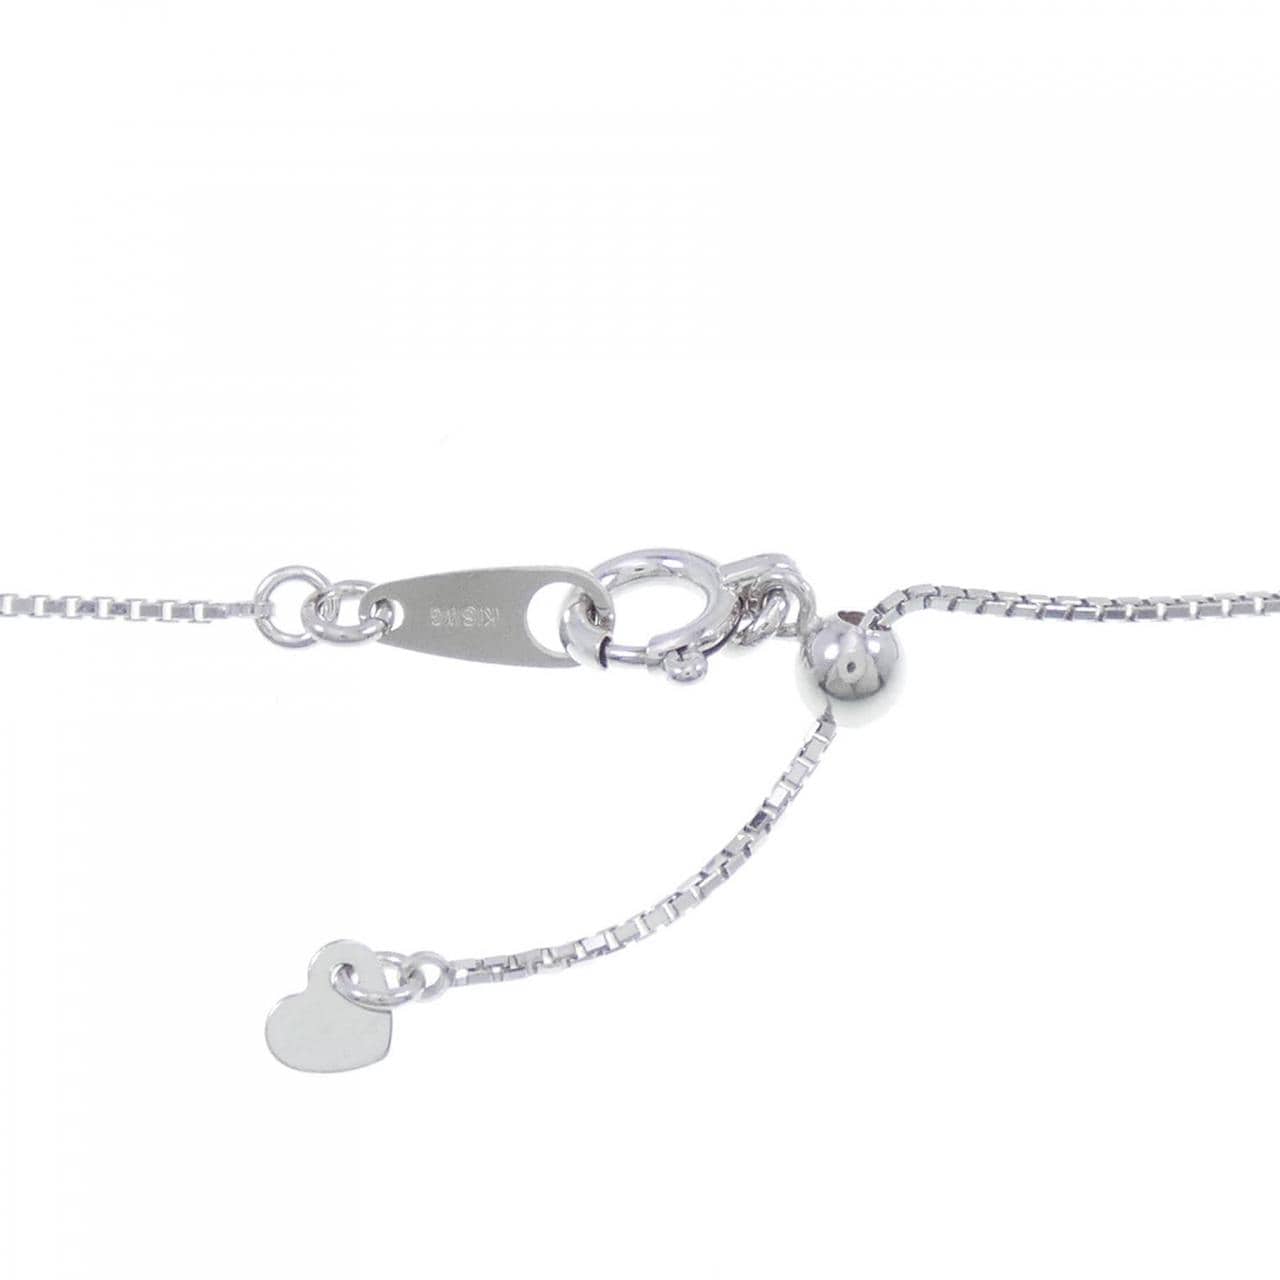 K18WG Horseshoe Diamond Necklace 1.24CT